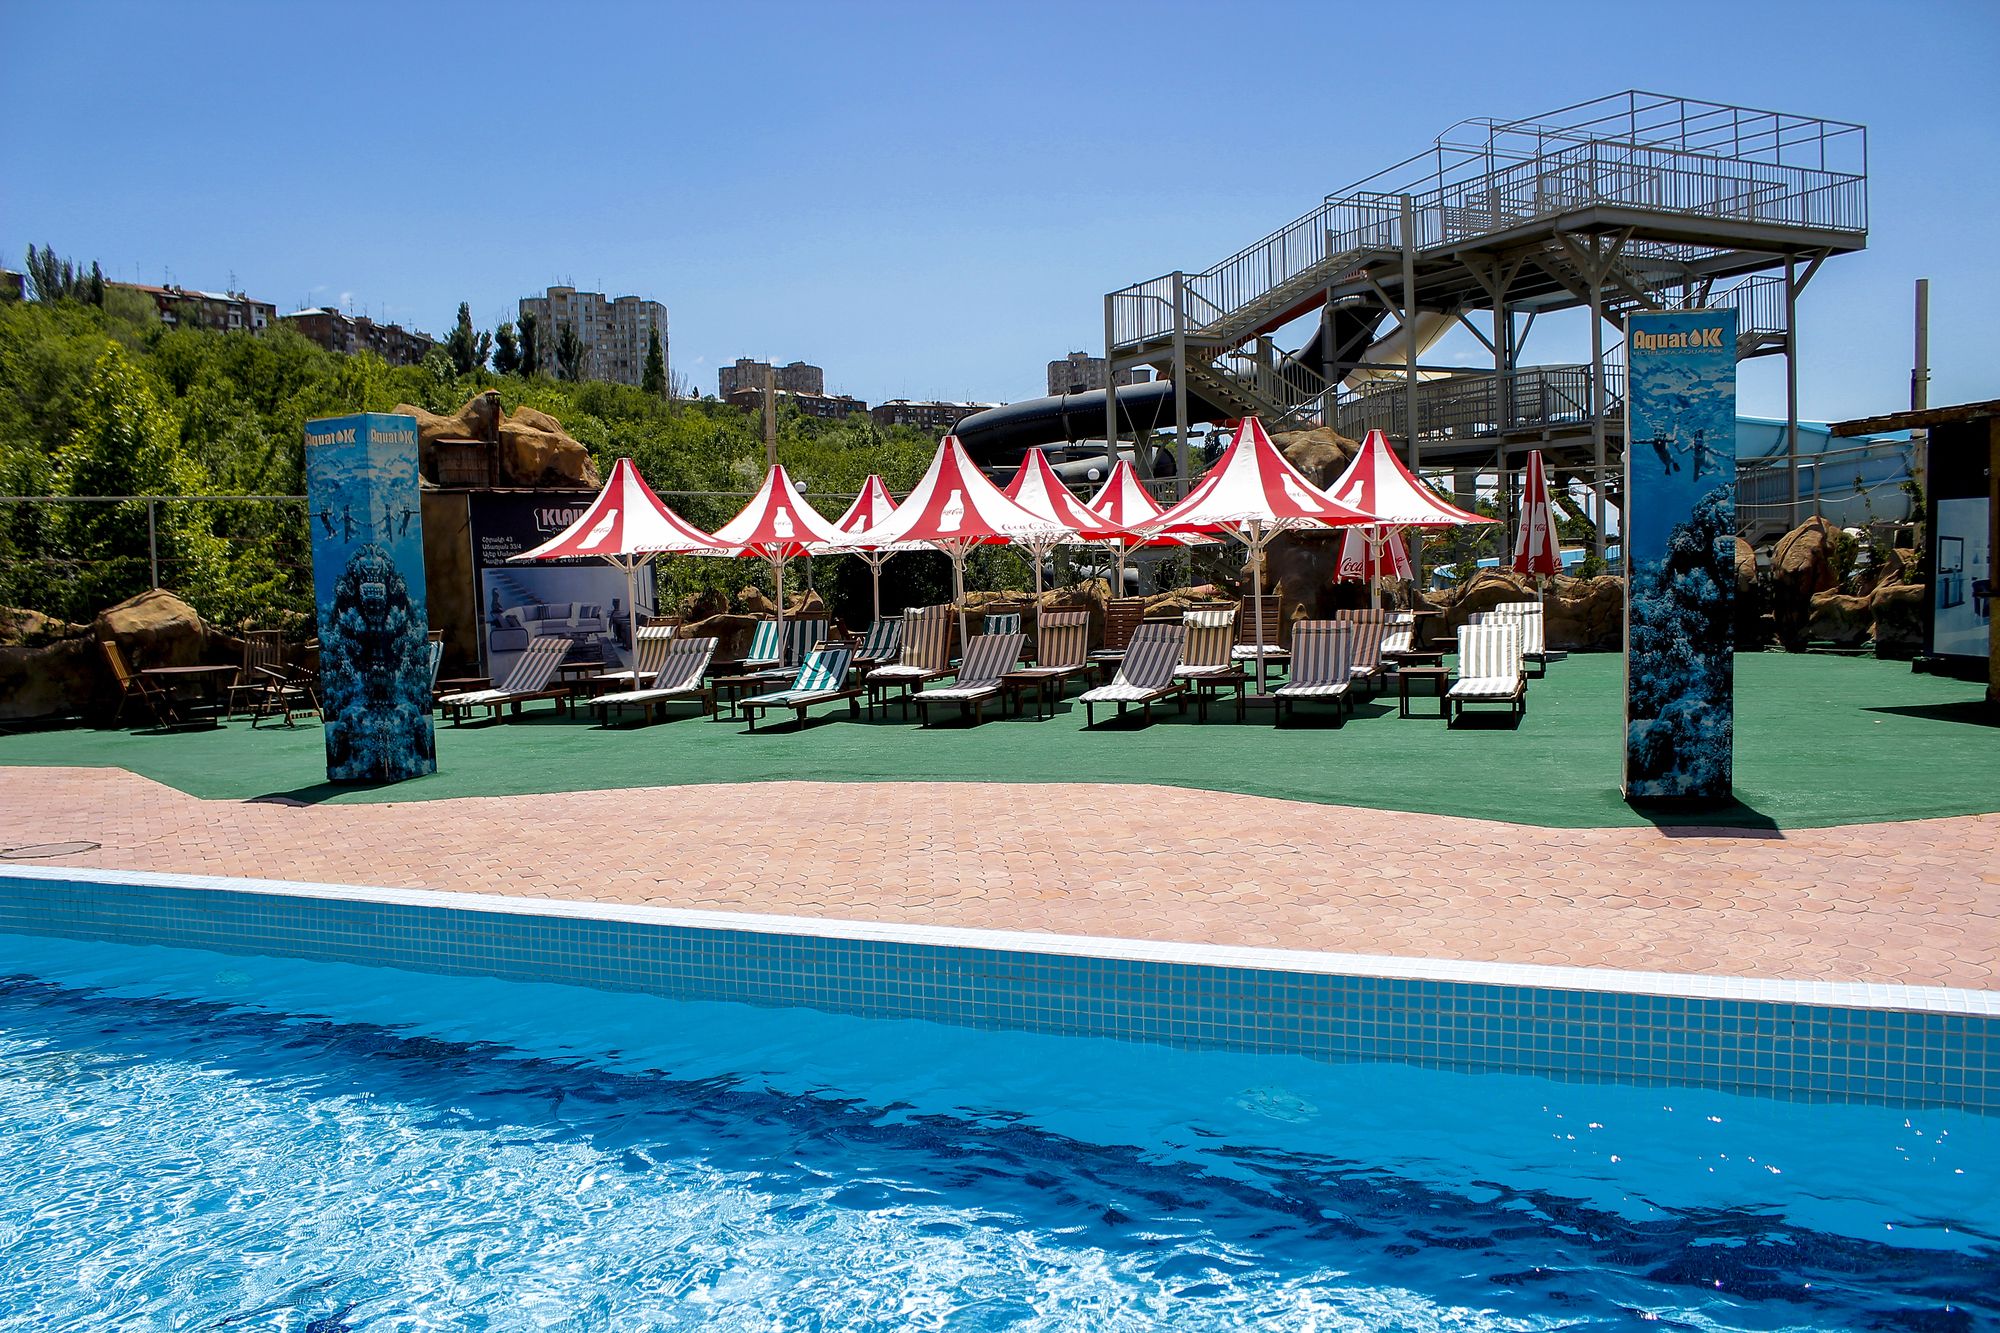 Aquatek Resort & Spa Hotel